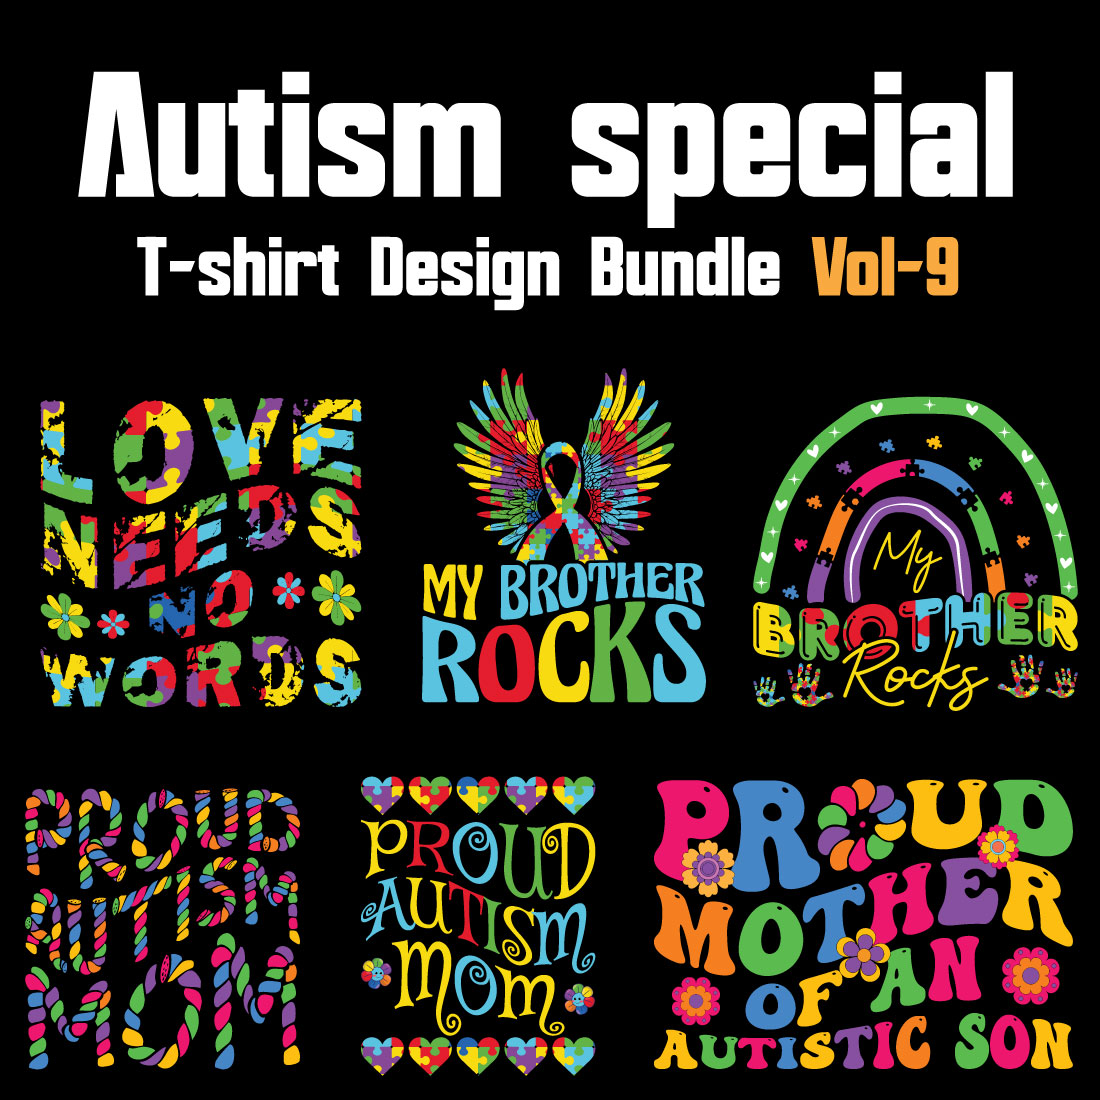 Autism Special T-shirt Design Bundle Vol-9 cover image.